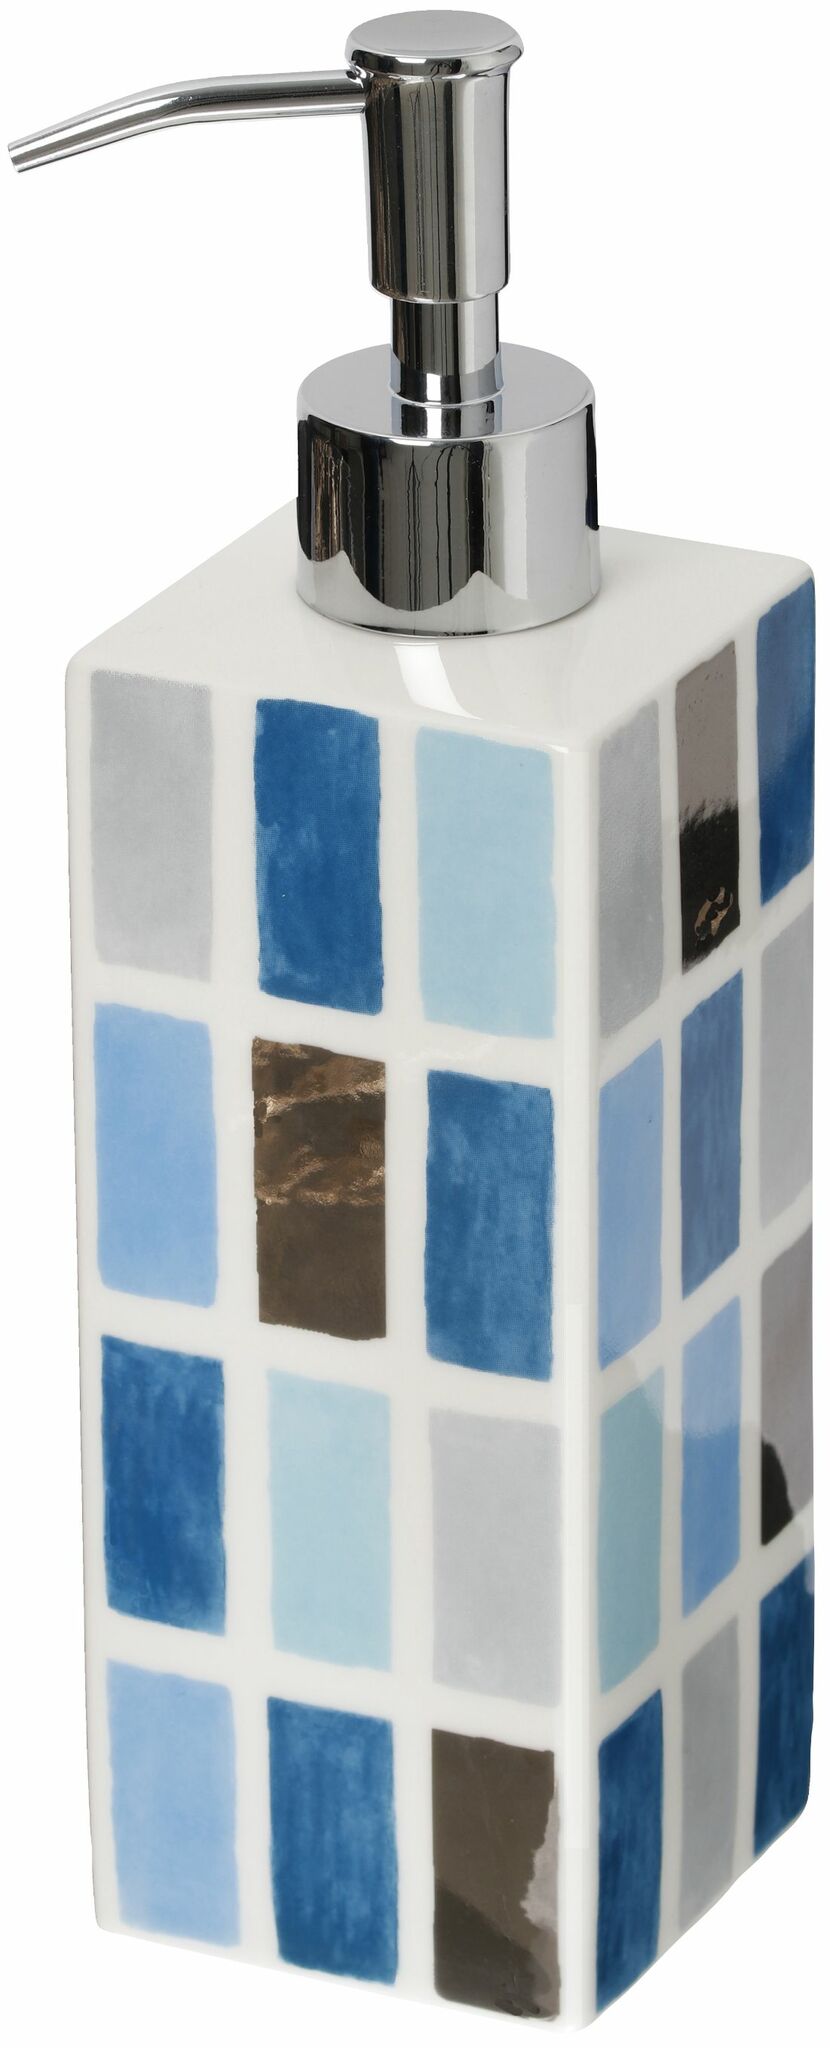 Kub classic pump en art decoinspirerad tvål/diskmedelspump i vitt blått och silver från Cult design.